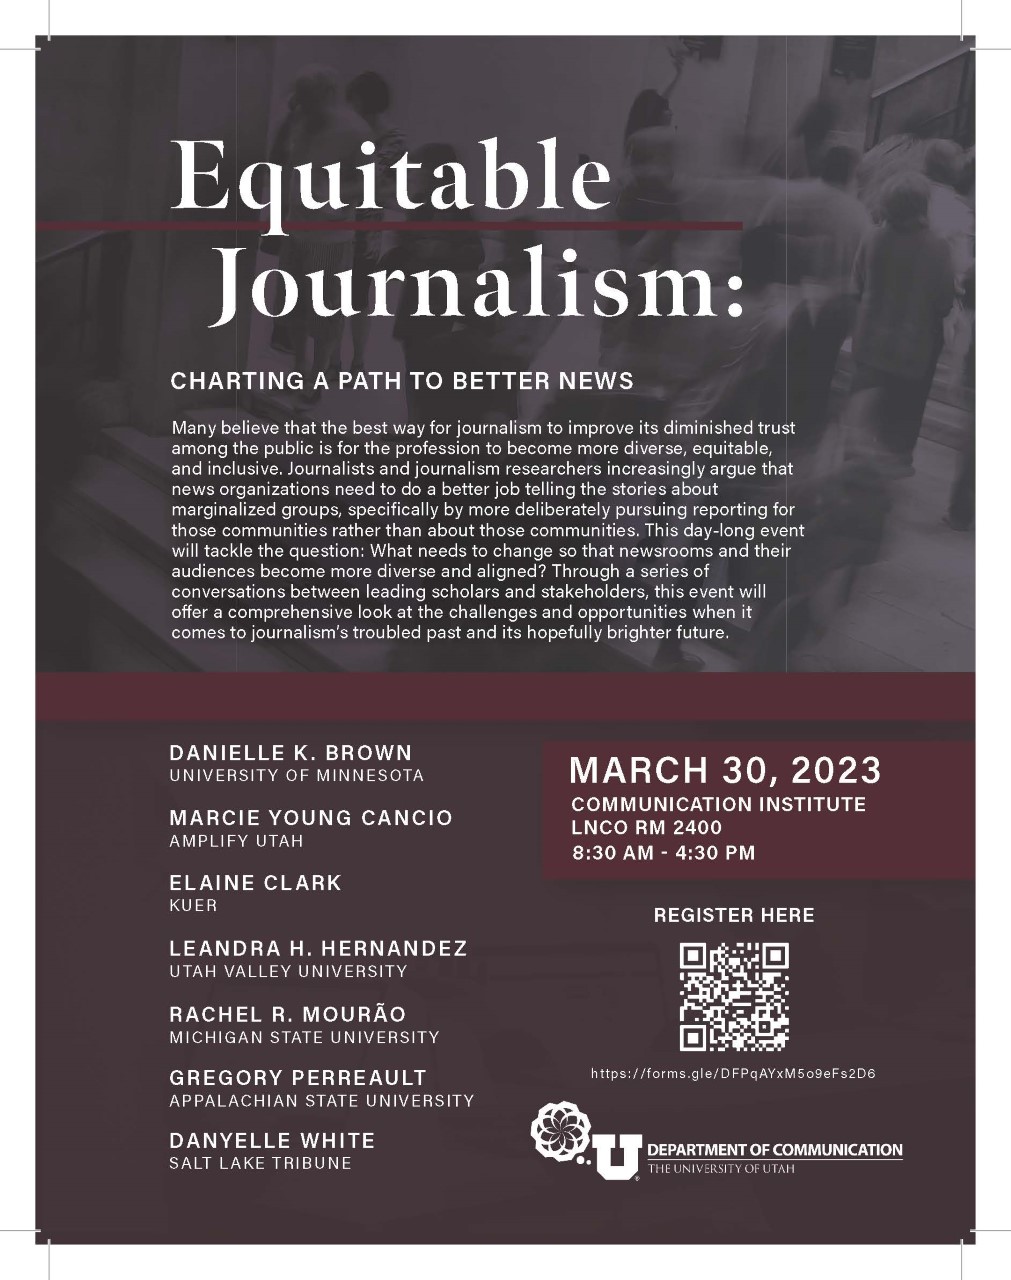 Equitable journalism flyer